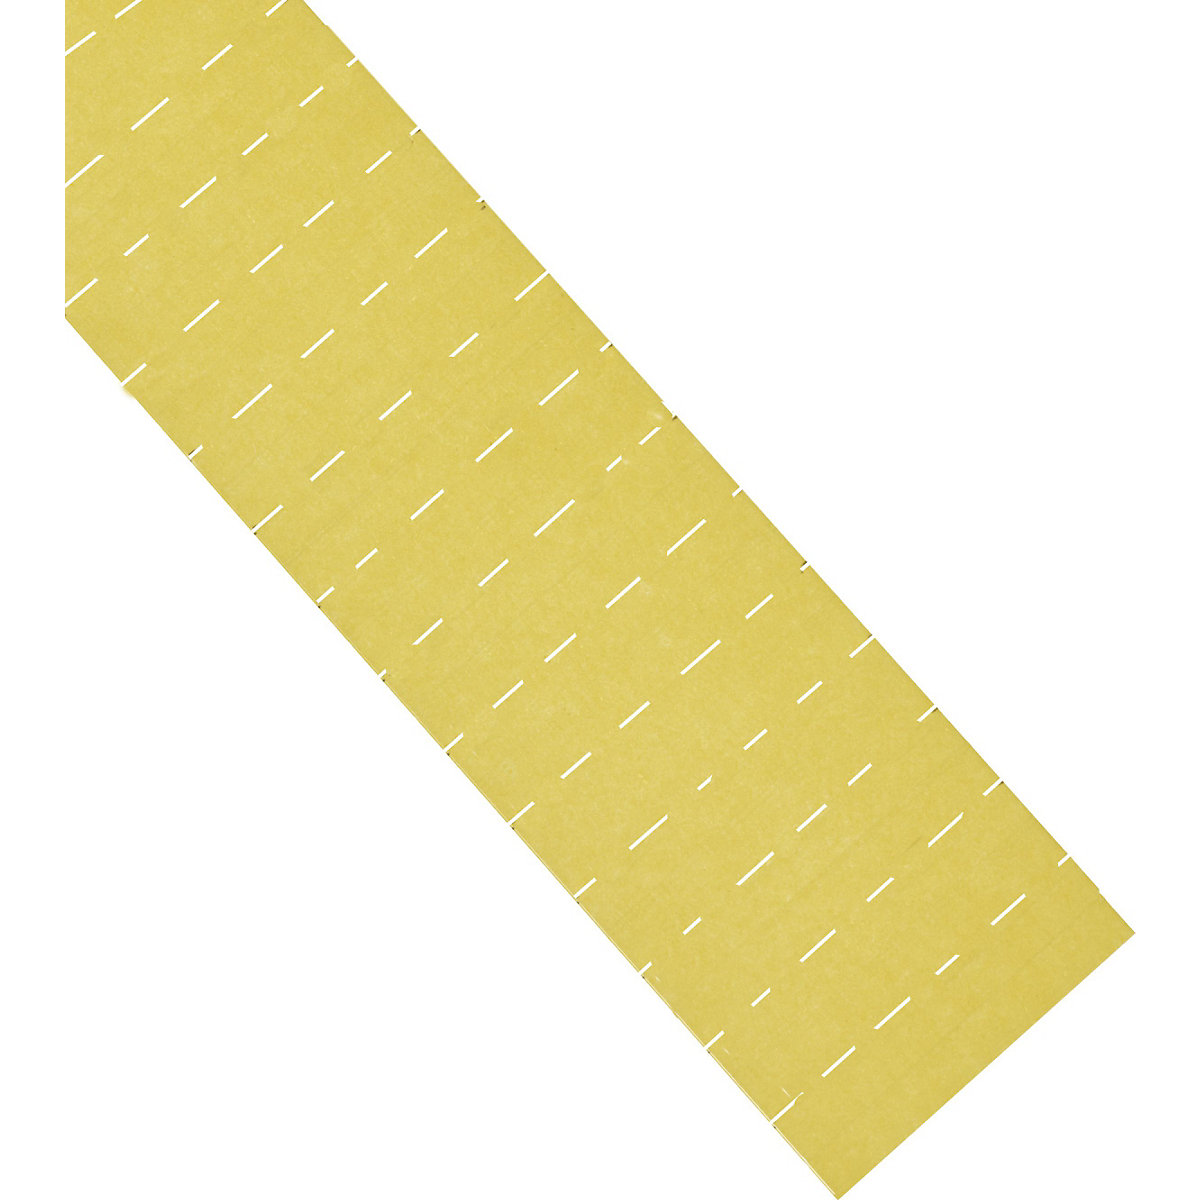 Etikete ferrocard – magnetoplan, VxŠ 15 x 80 mm, pak. 345 kom., u žutoj boji